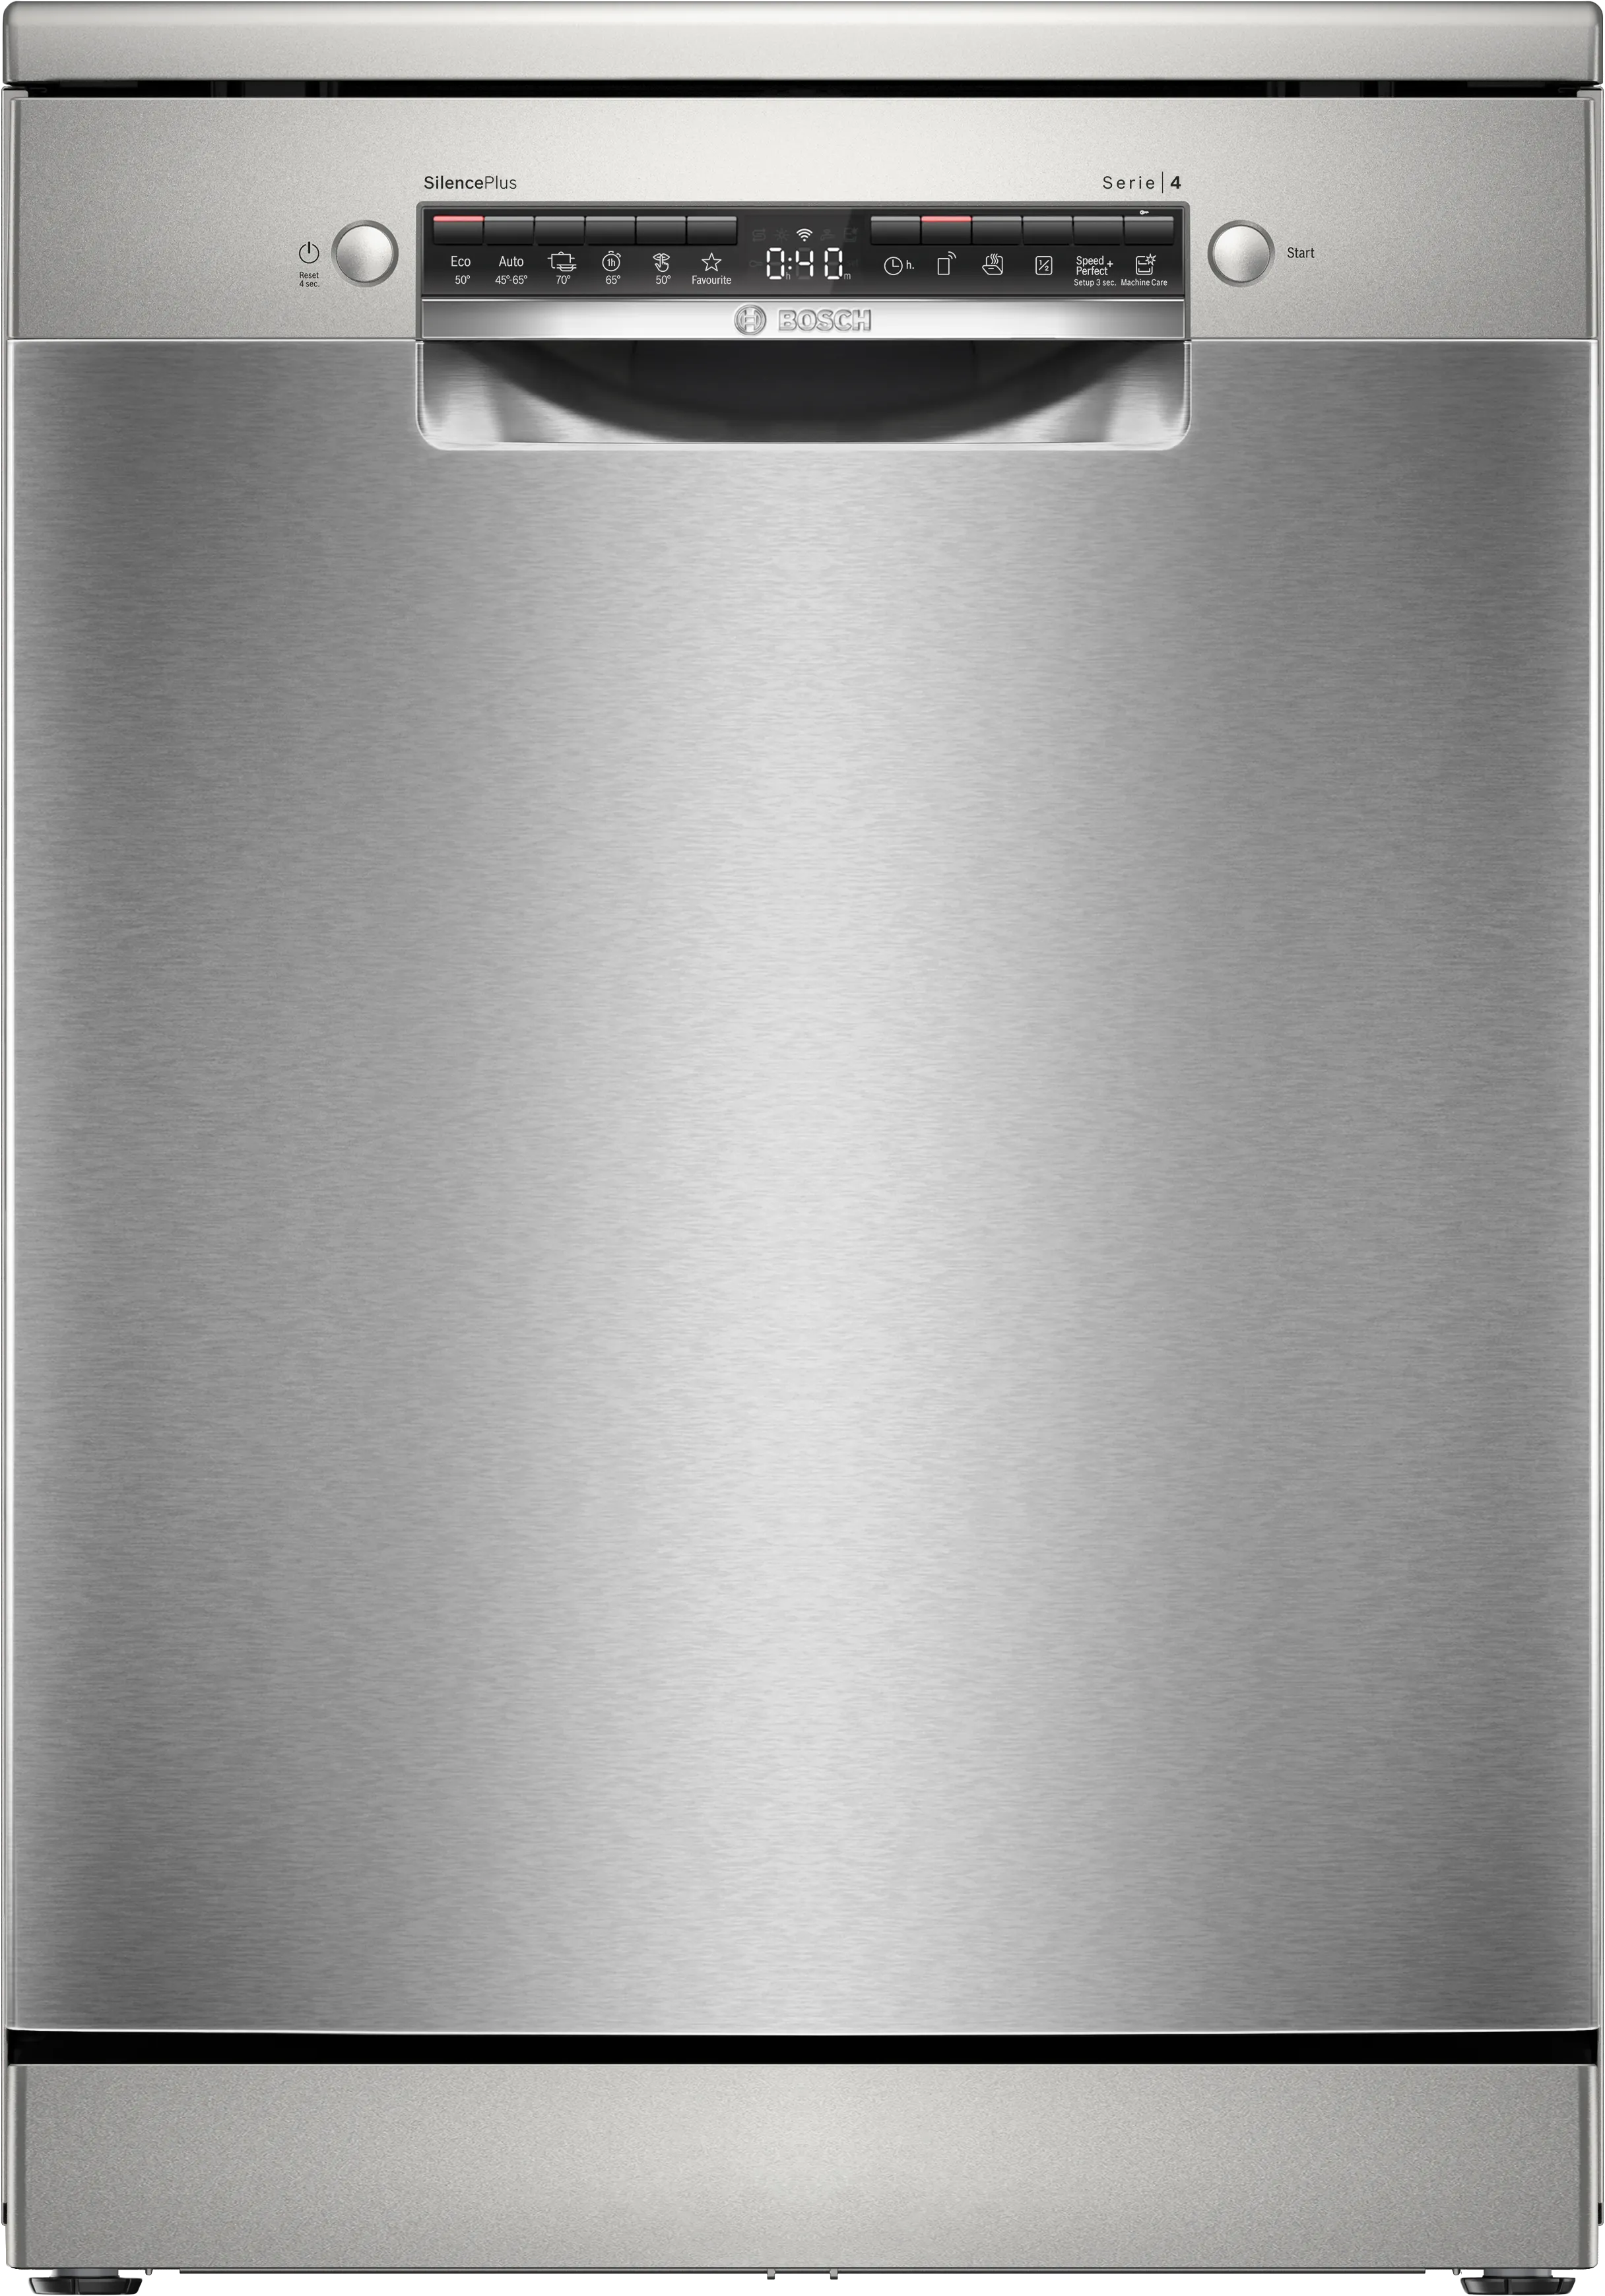 Serie 4 Frittstående oppvaskmaskin 60 cm rustfritt/sølv 